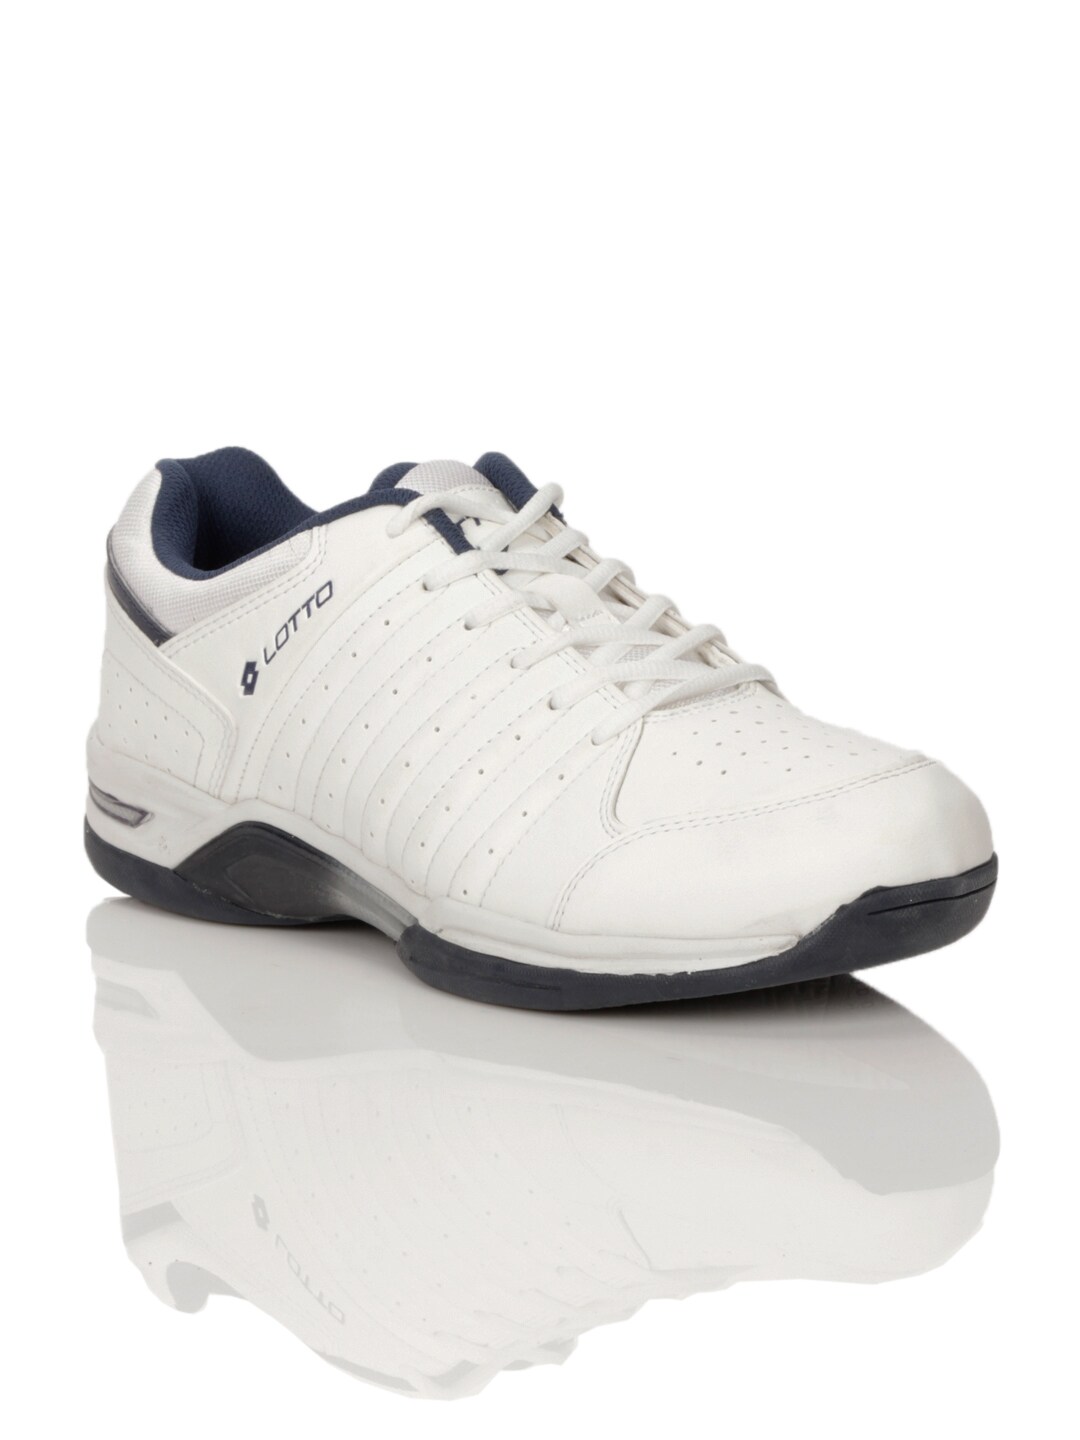 Lotto Men Classica II White Sports Shoes